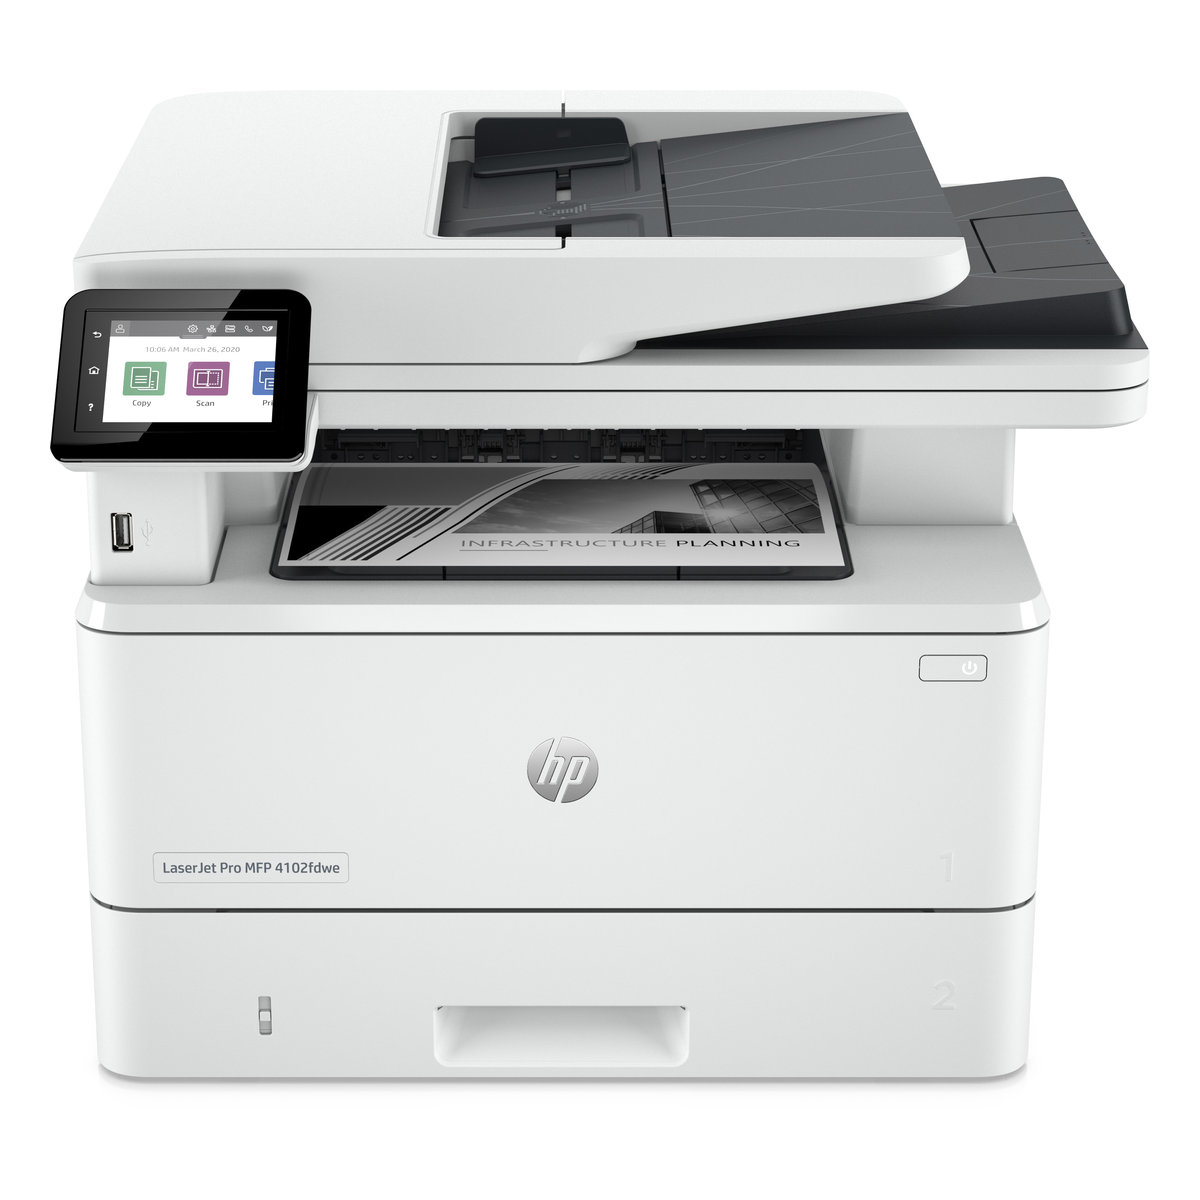 Náplně do tiskárny HP LaserJet Pro MFP 4102fdwe